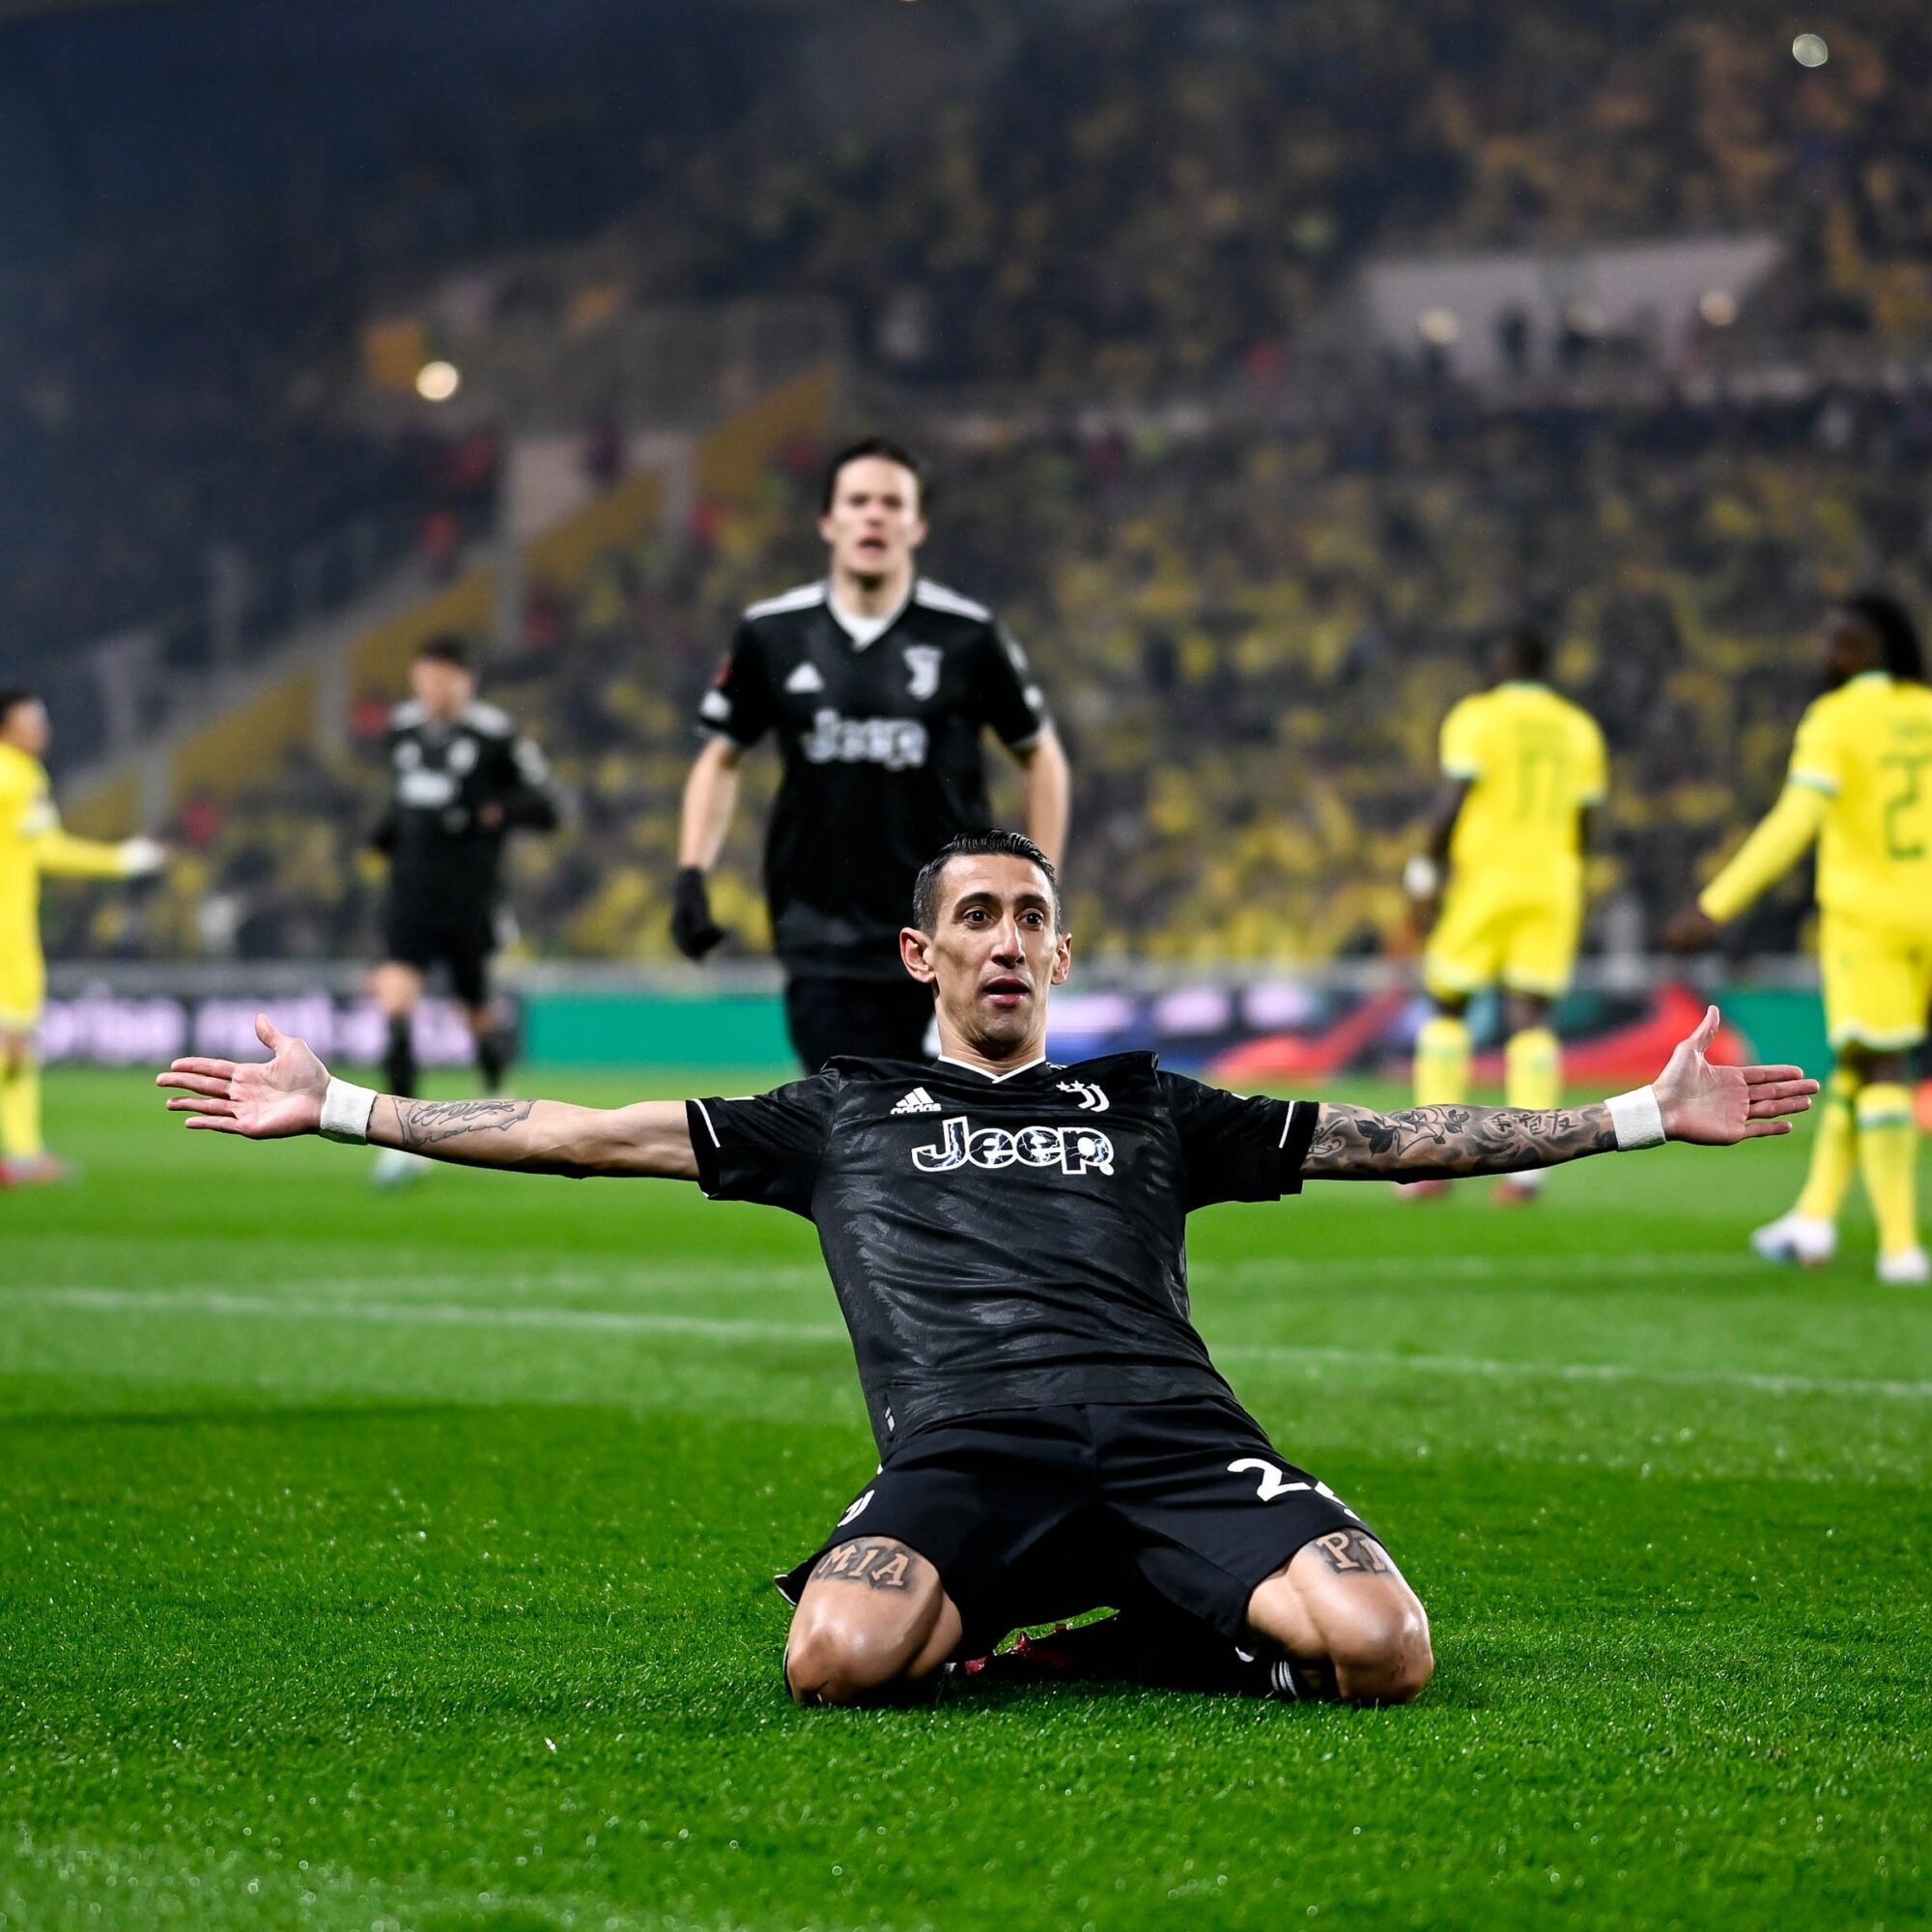 Europa League: Triplete y brillante actuación de Di María para el triunfo de Juventus